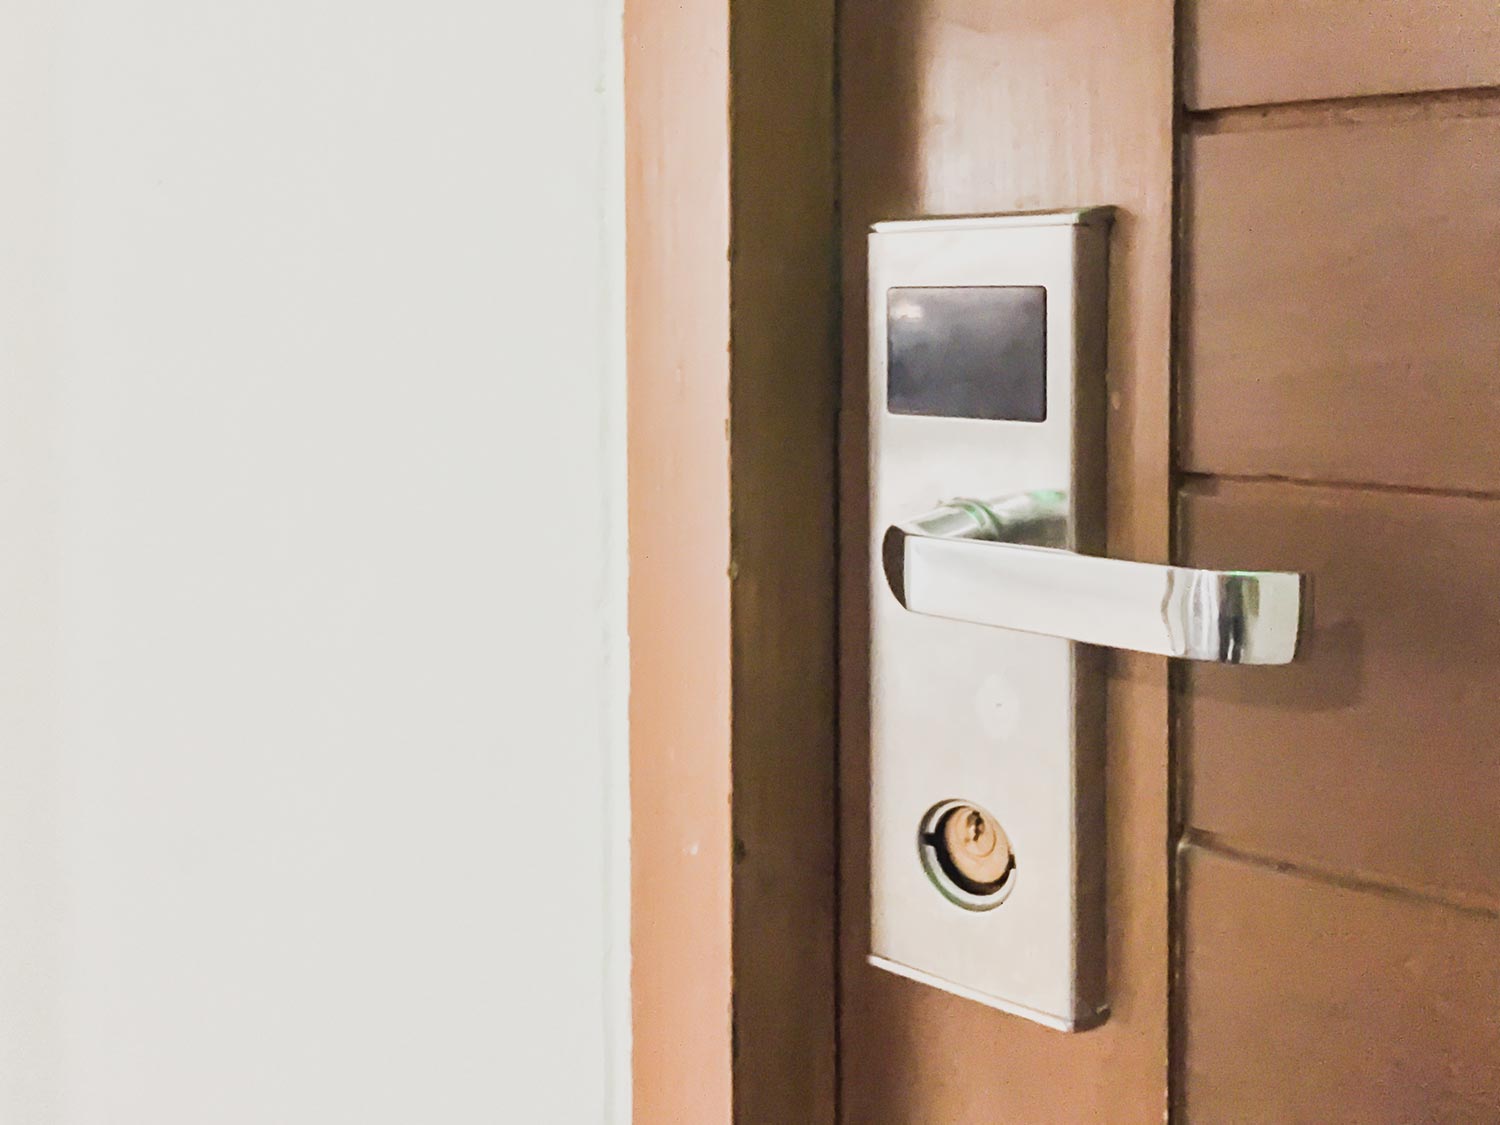 Modern door handle with security system electronic lock the hotel room door